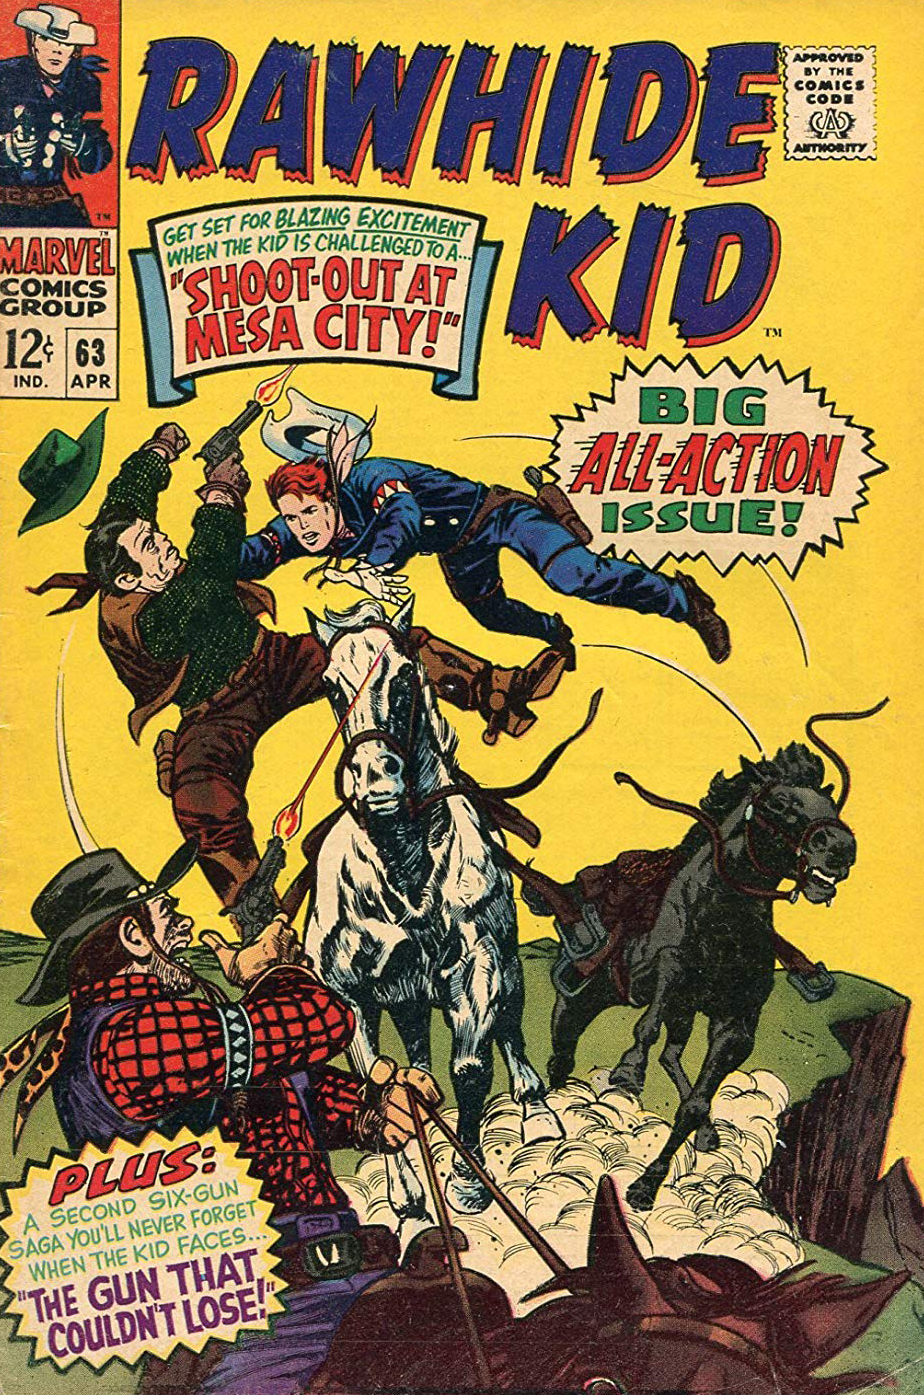 Rawhide Kid (1955) #63